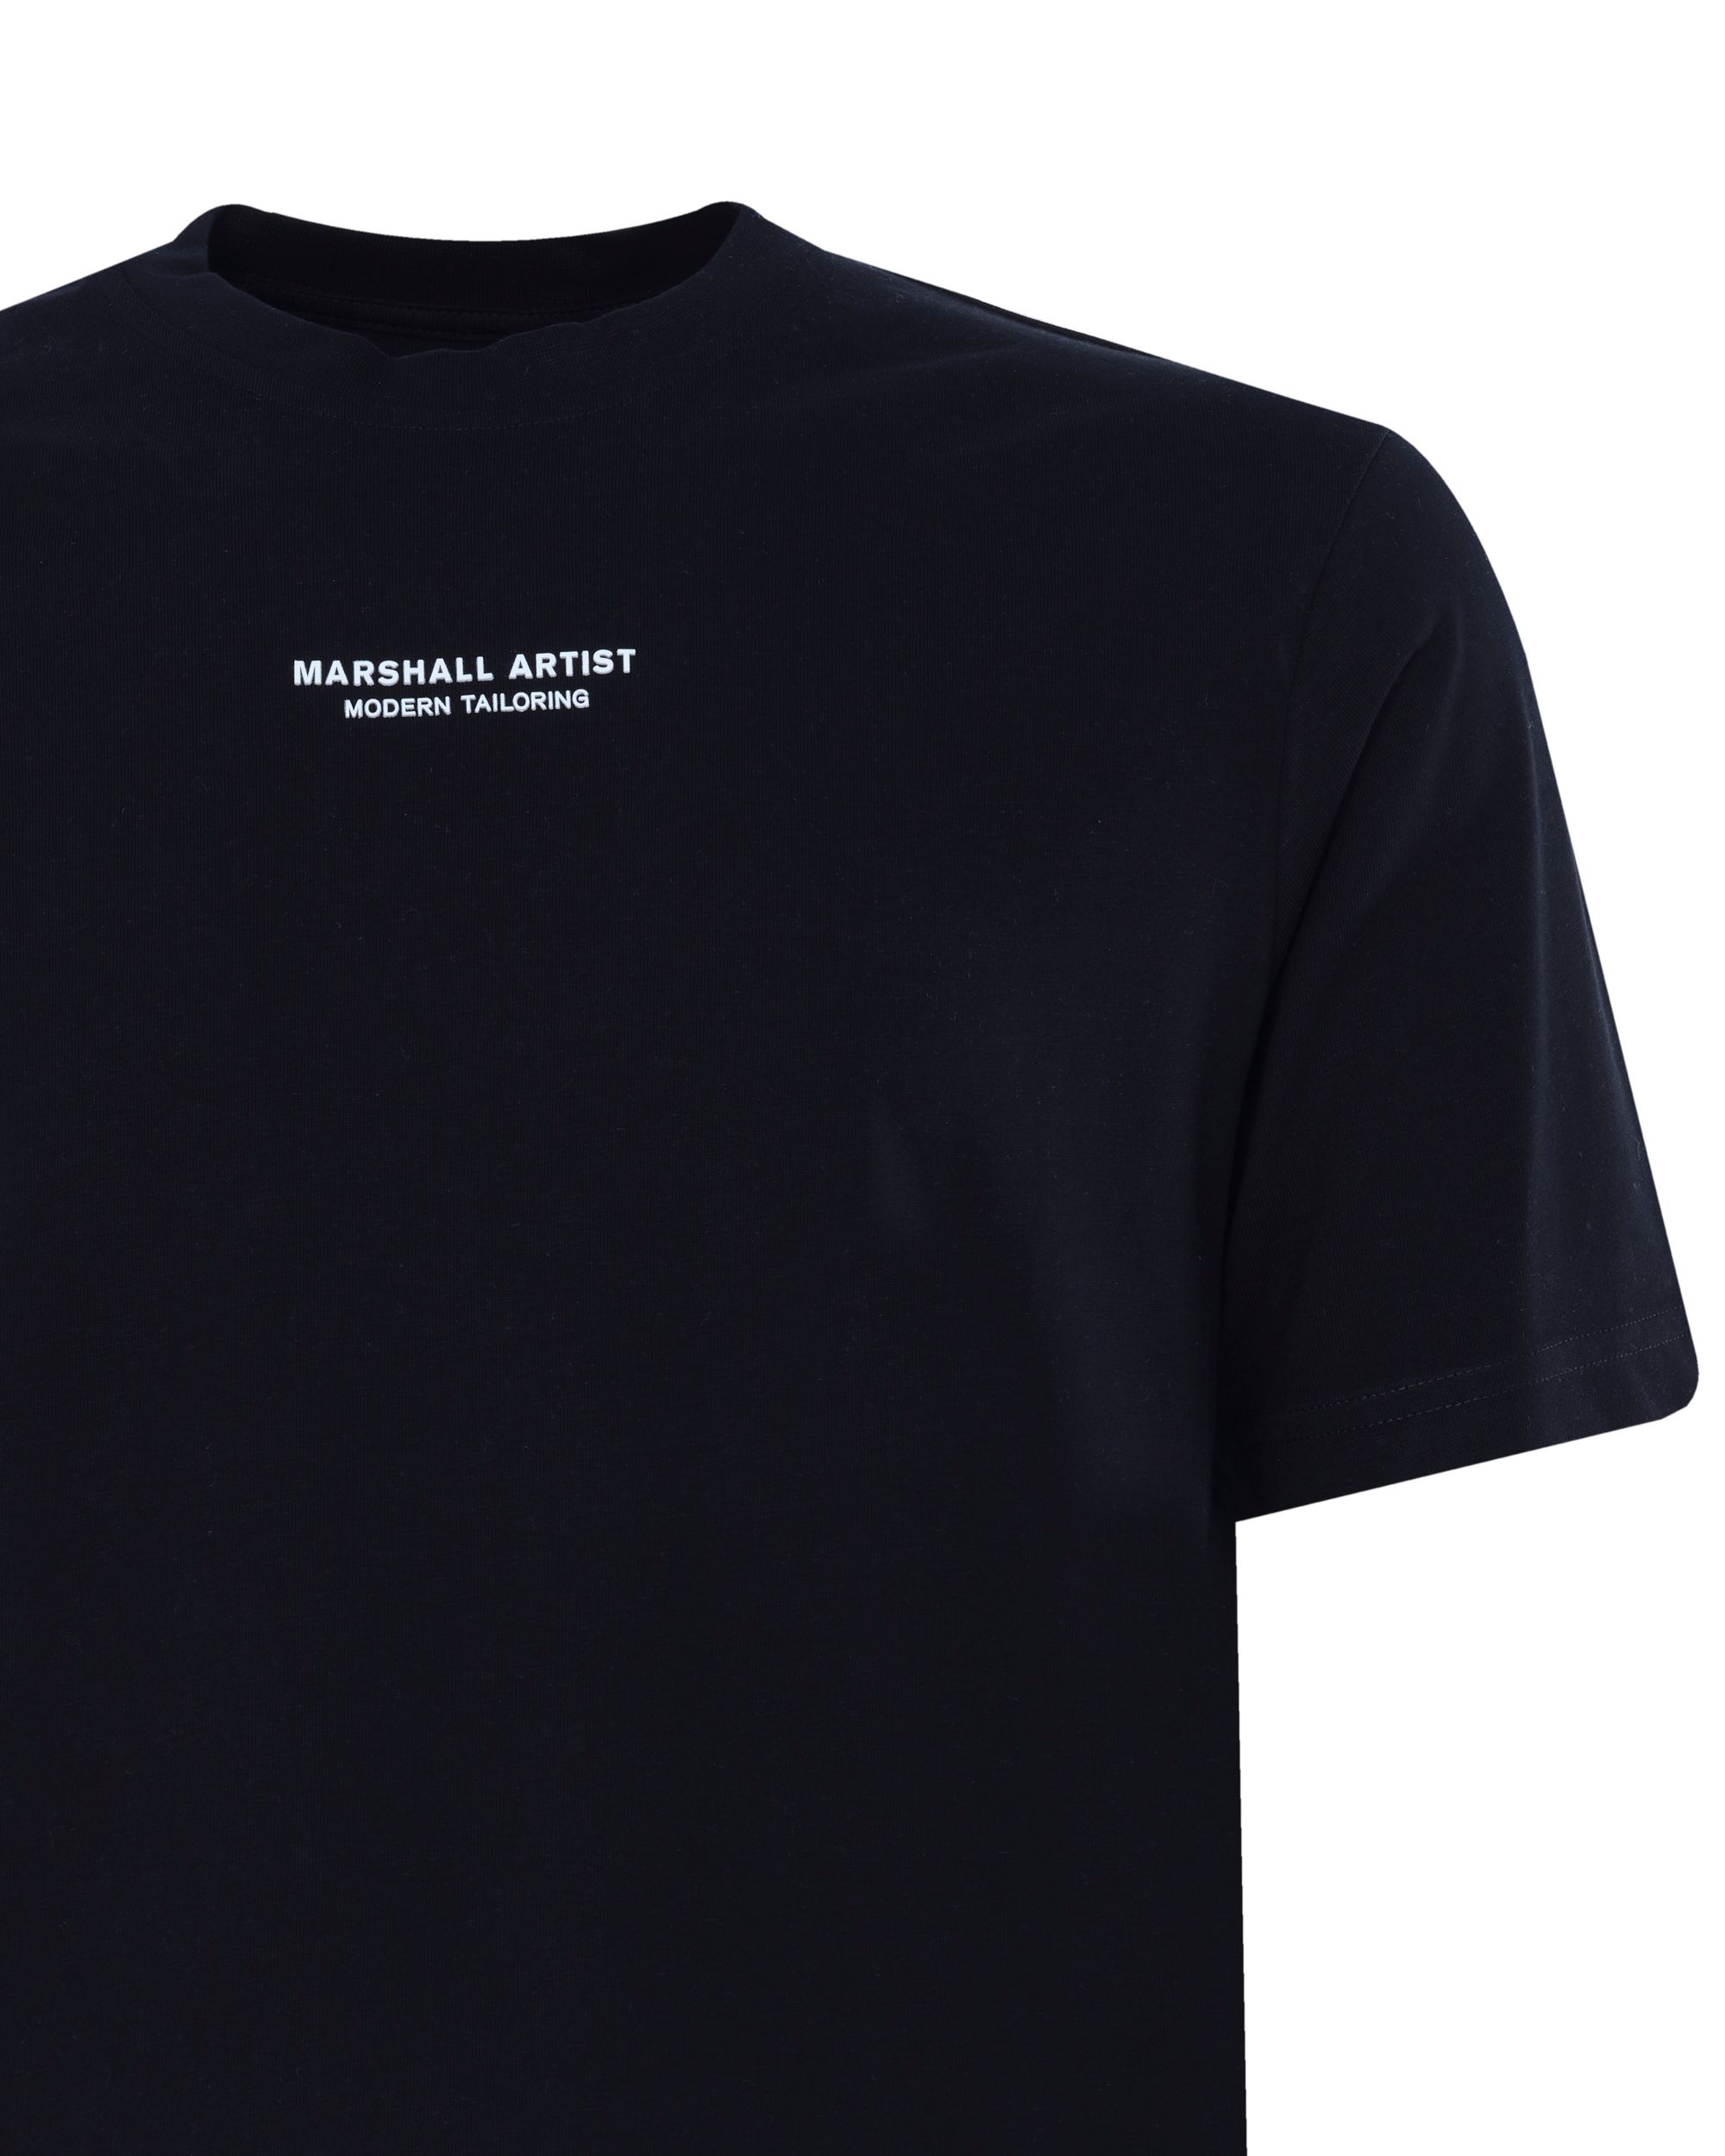 Marshall Artist T-shirt KM Zwart 081055-001-L